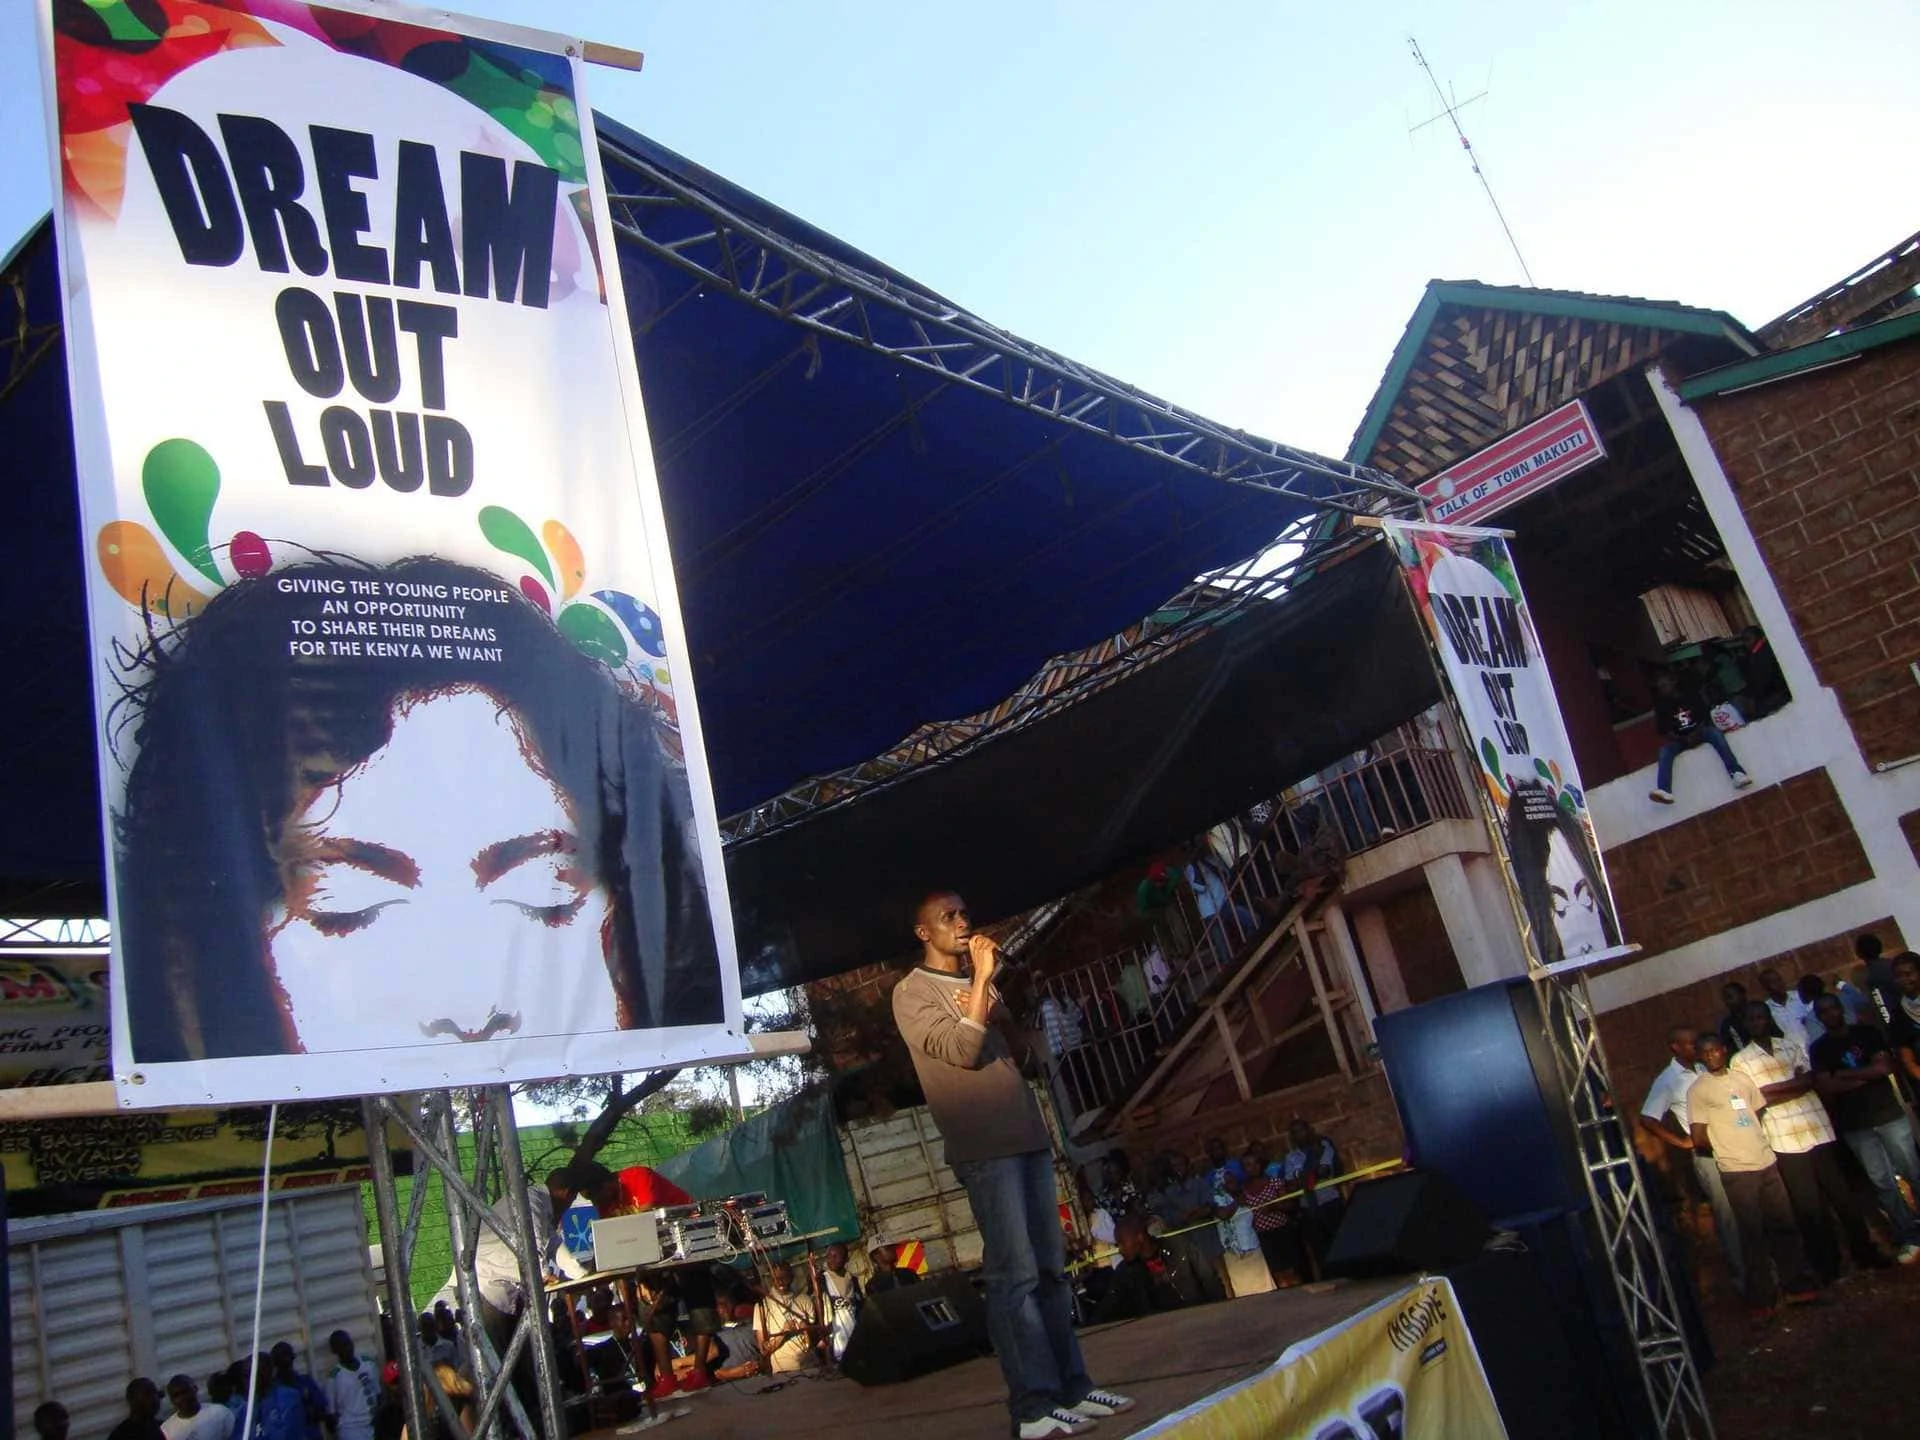 Die Bühne von imagine Kenia aus dem Jahr 2011. Auf dem Plakat ist das damalige Motto zu sehen: Dream out loud.